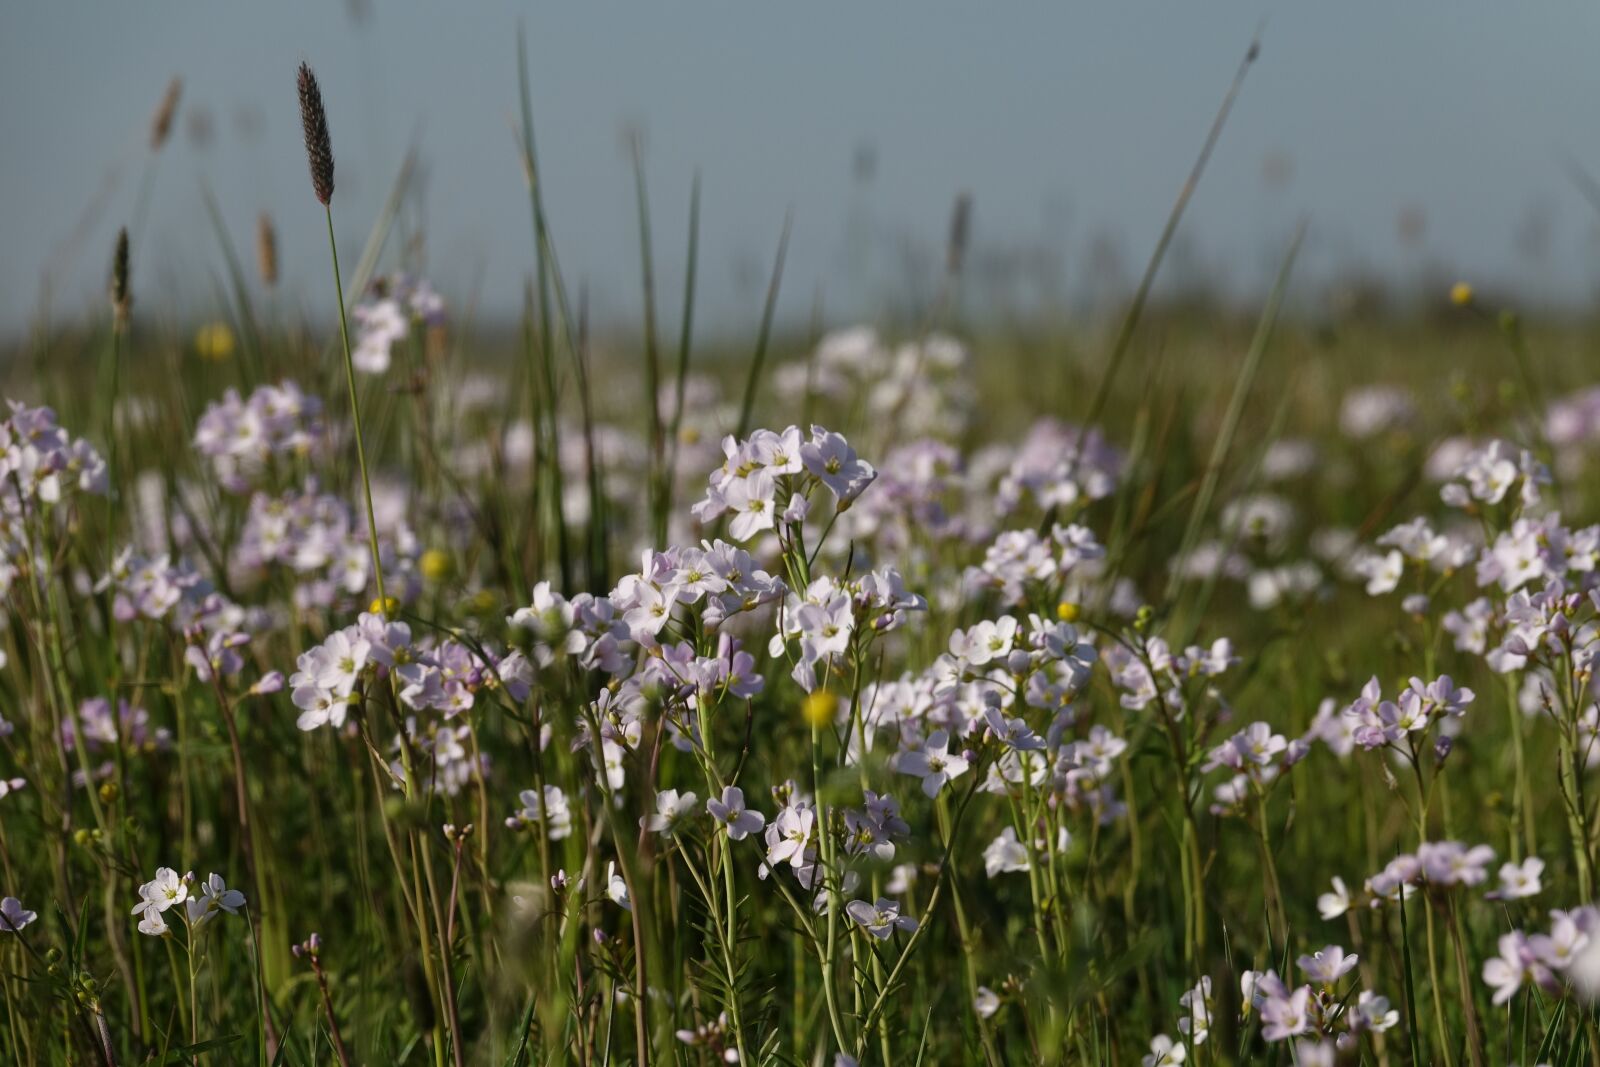 Sony Cyber-shot DSC-RX10 III sample photo. Flowers field, meadow, field photography